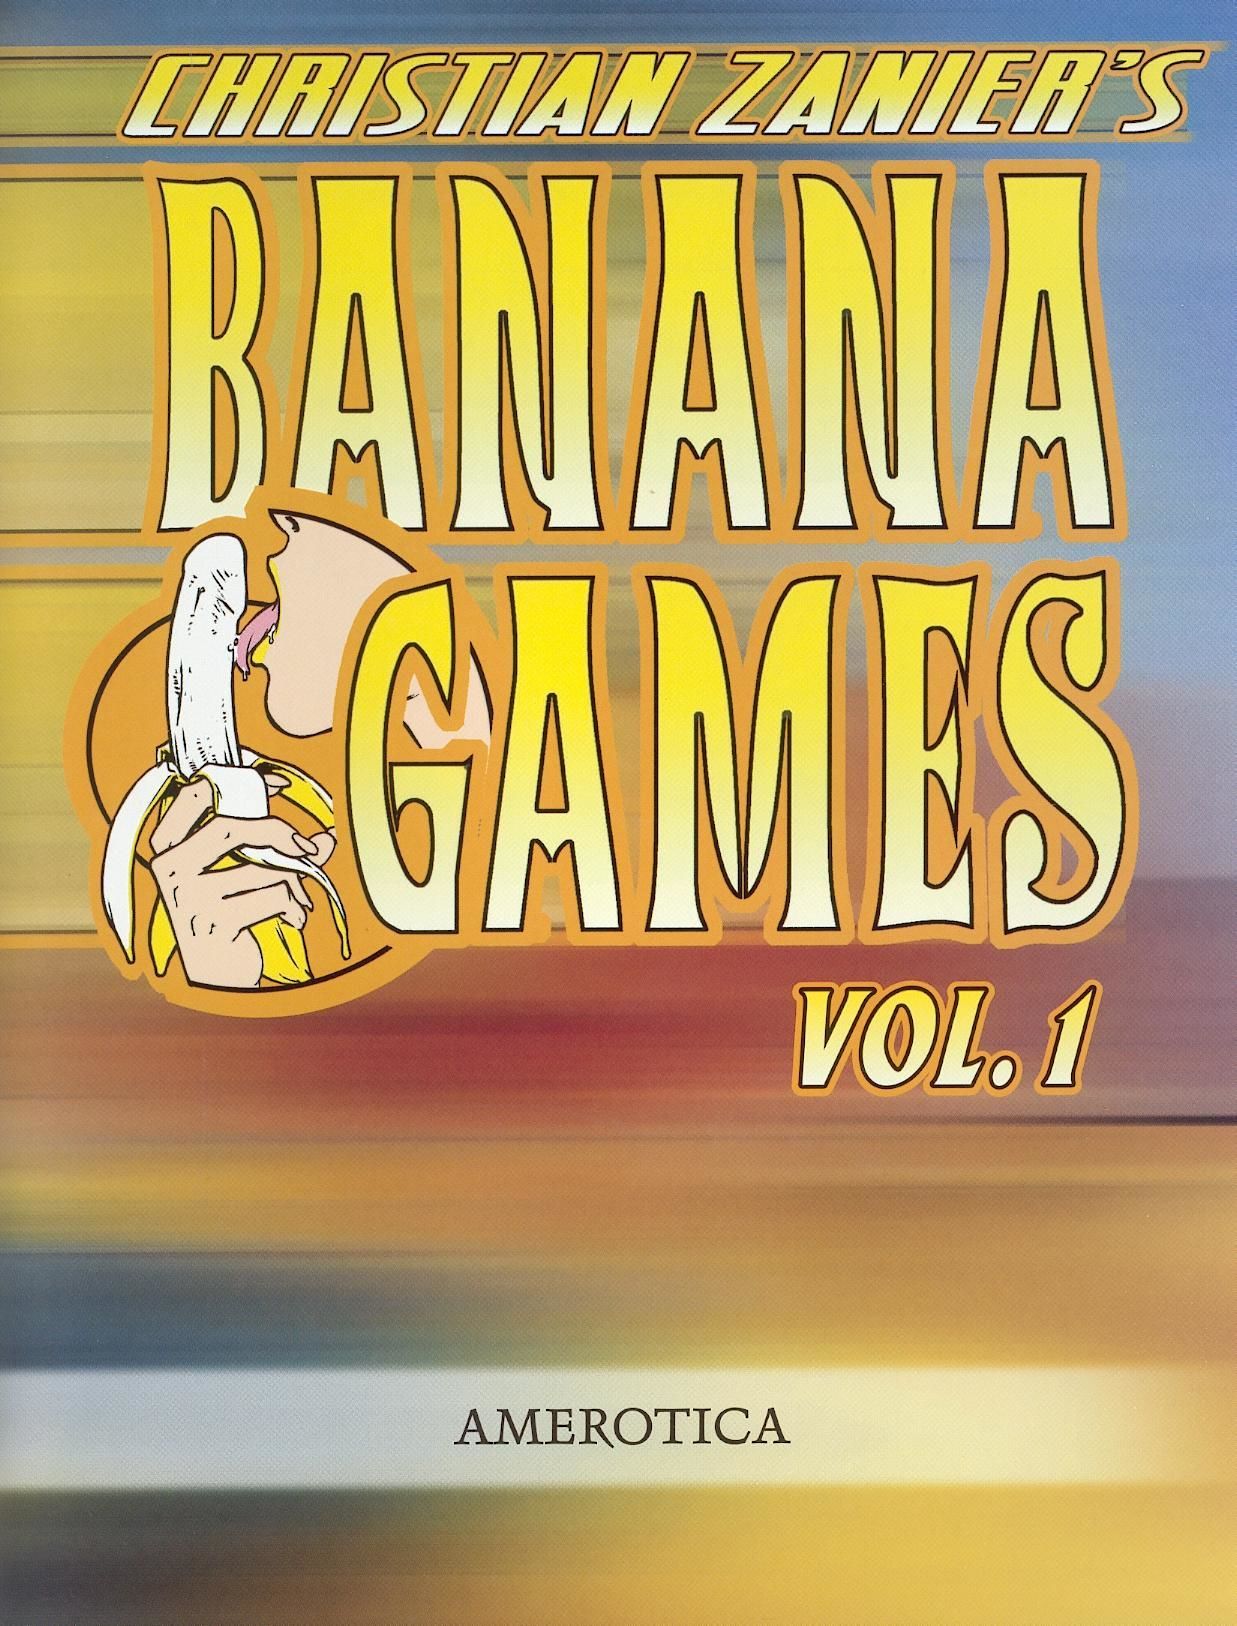 คริสเตียน zanier กล้วย เกมส์ ระดับเสียง #1